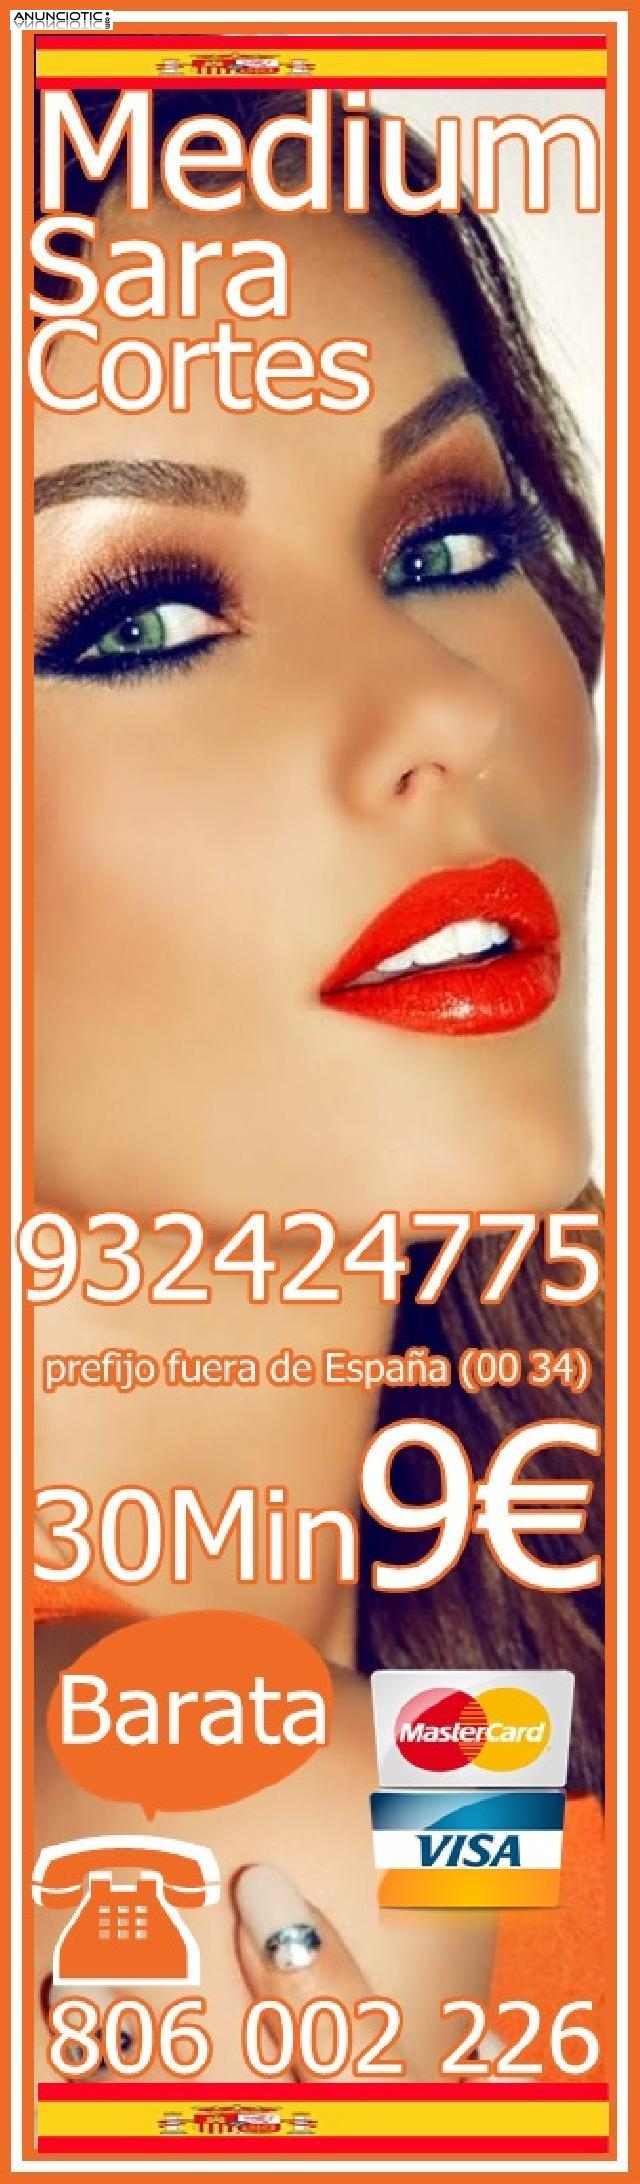  Respuestas Claras y Sinceras 932424775 VISA 4 EUR/15M De España llamar aqu